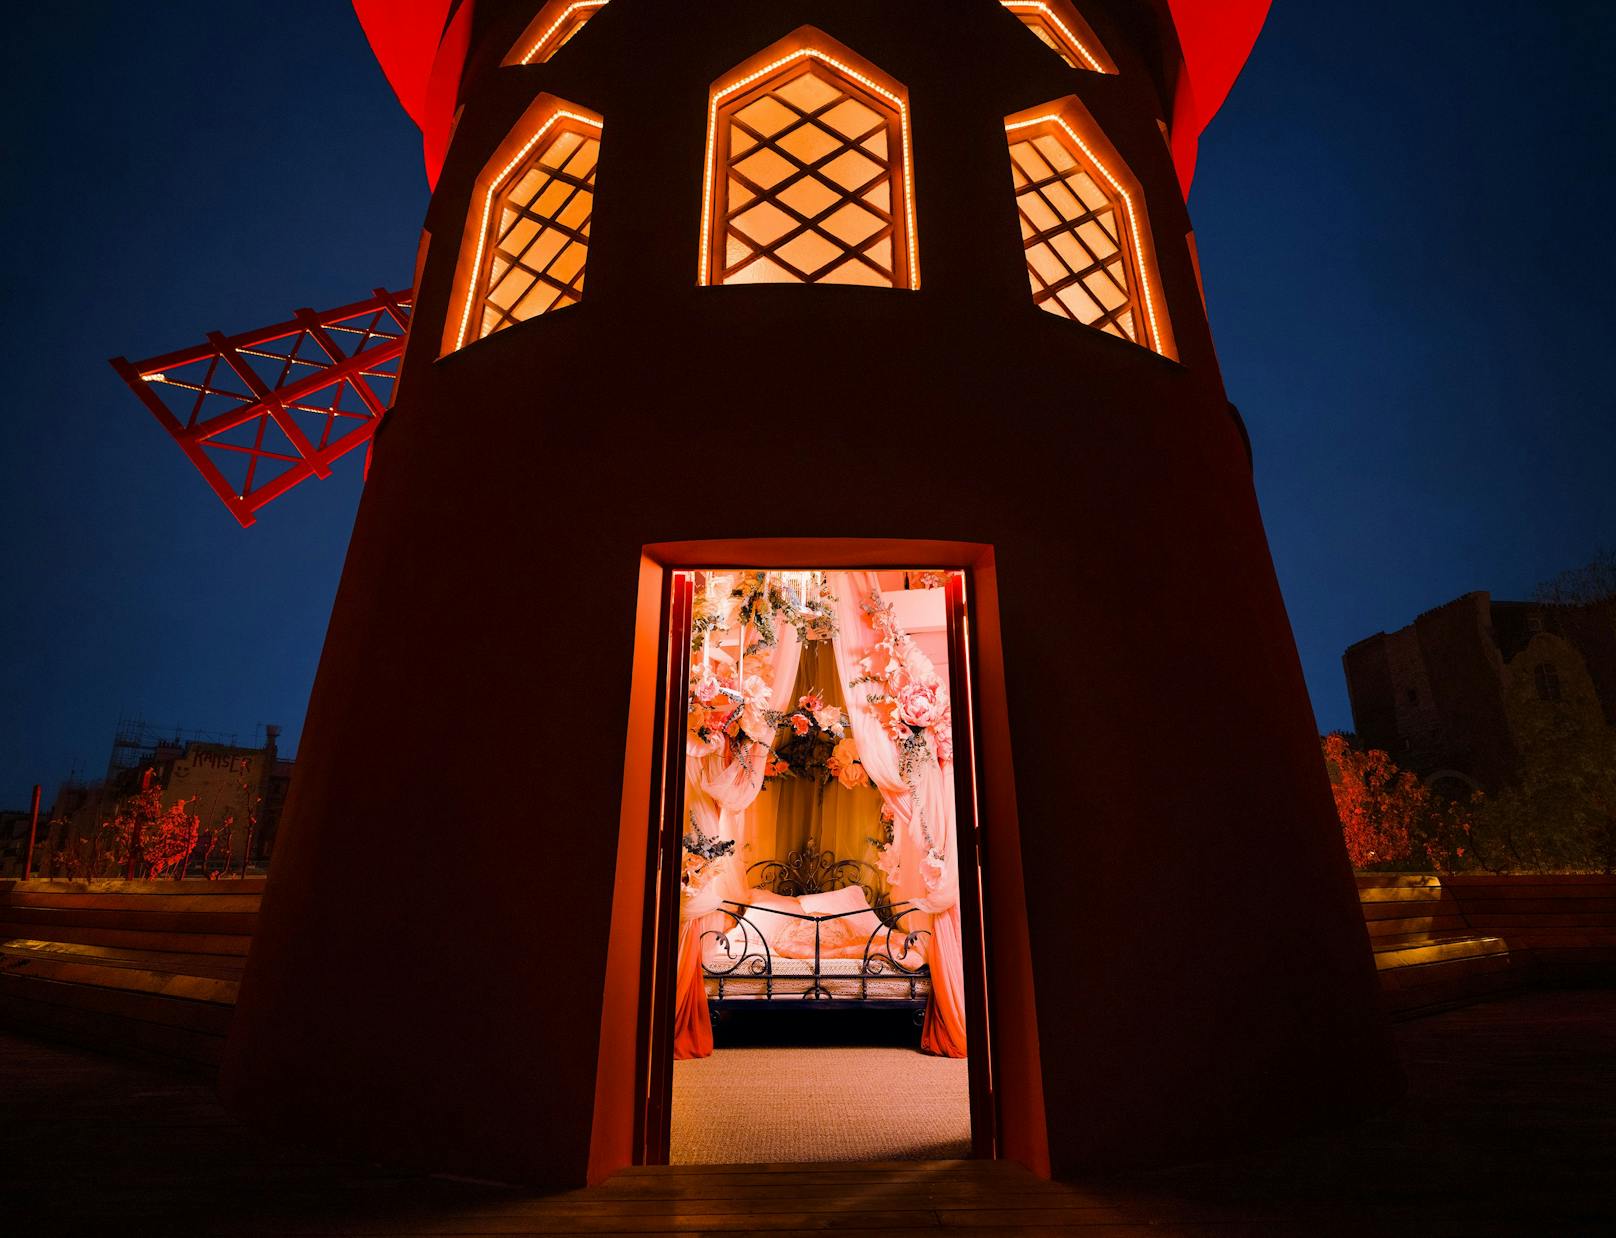 Du kannst jetzt in der Mühle des Moulin Rouge schlafen